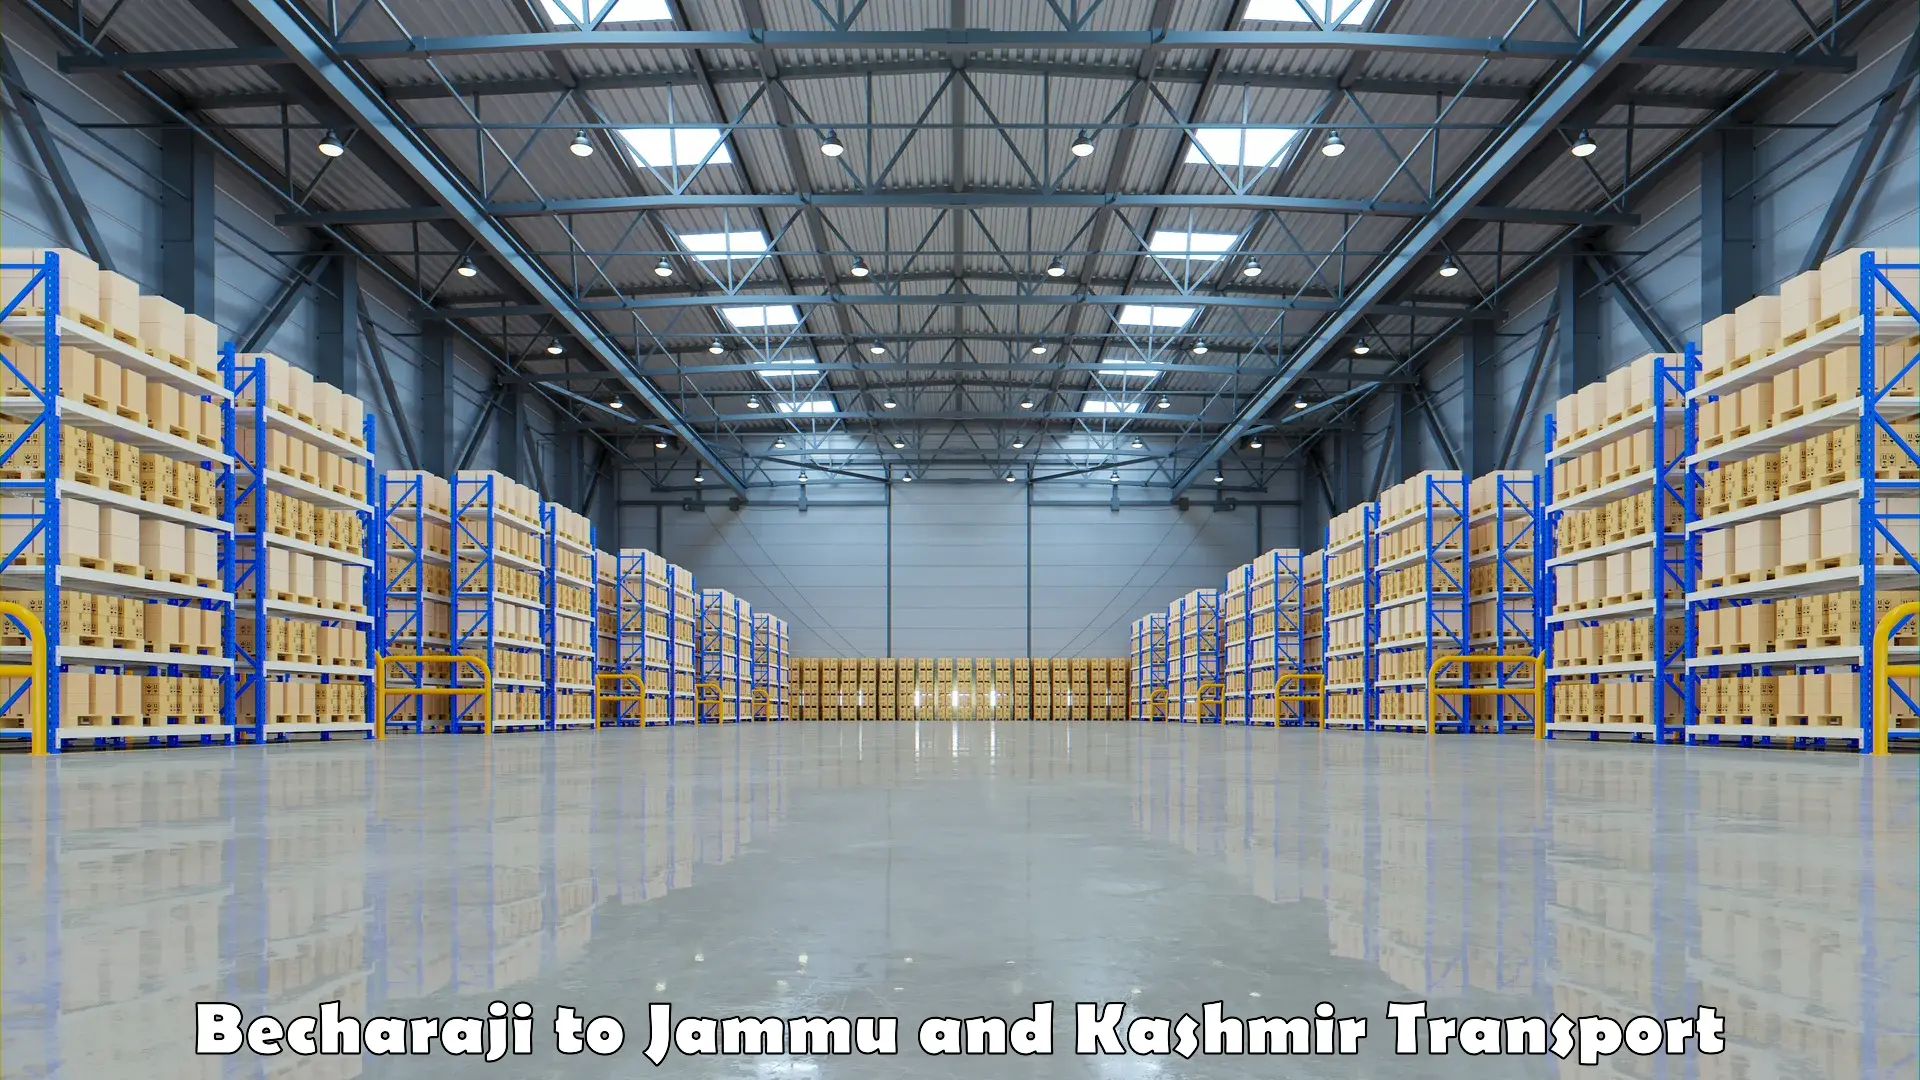 Express transport services Becharaji to Jammu and Kashmir